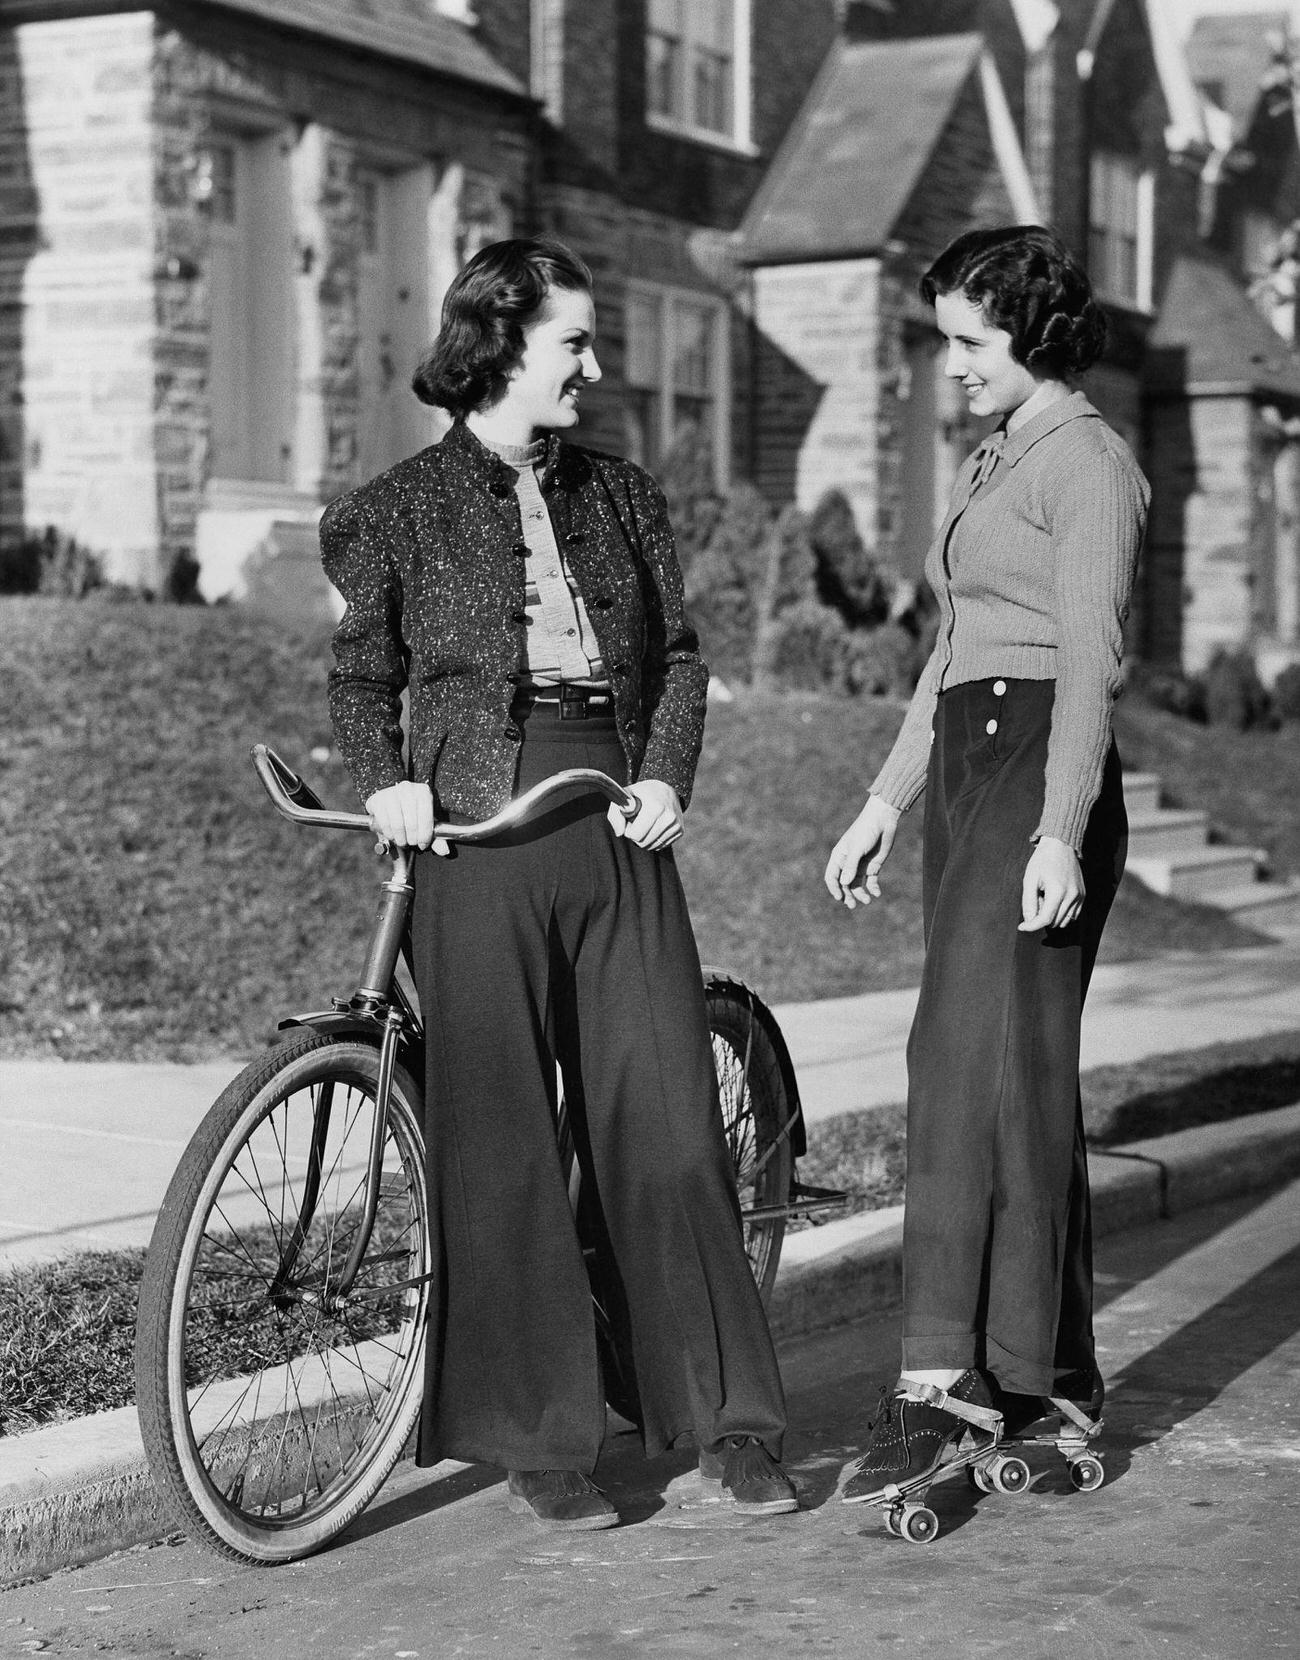 Women Talking on a Street.